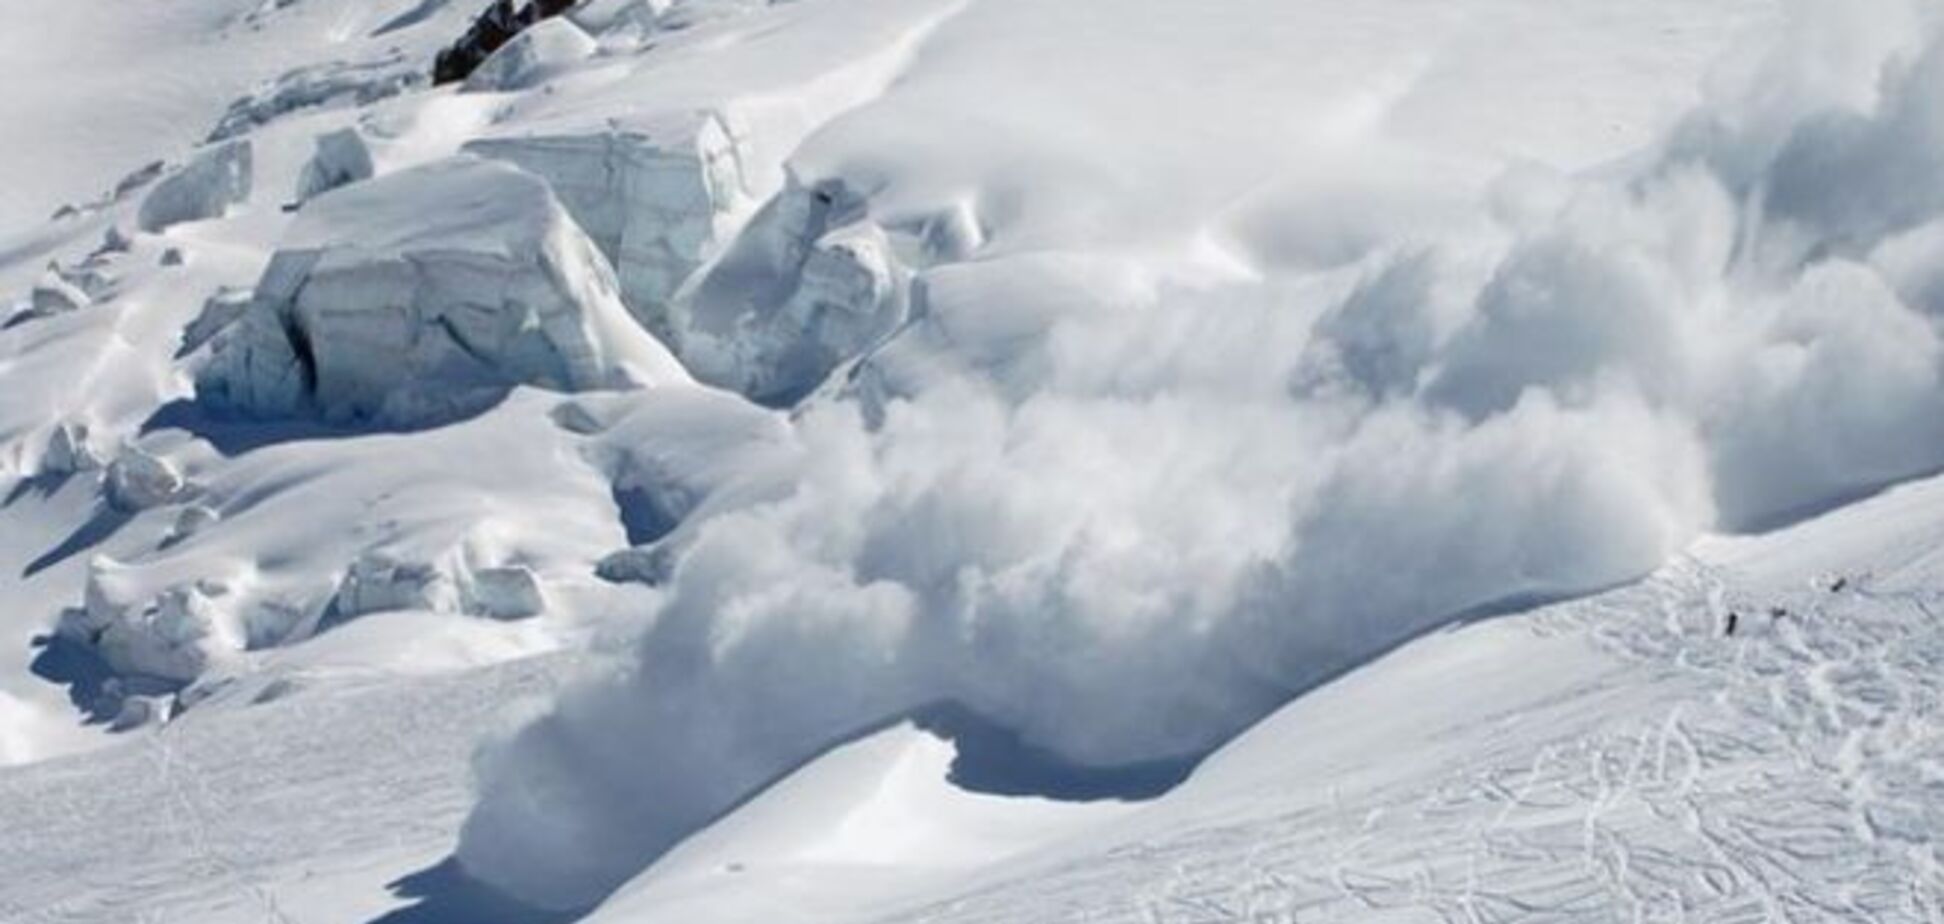 Найдены тела более ста альпинистов под лавиной в Непале